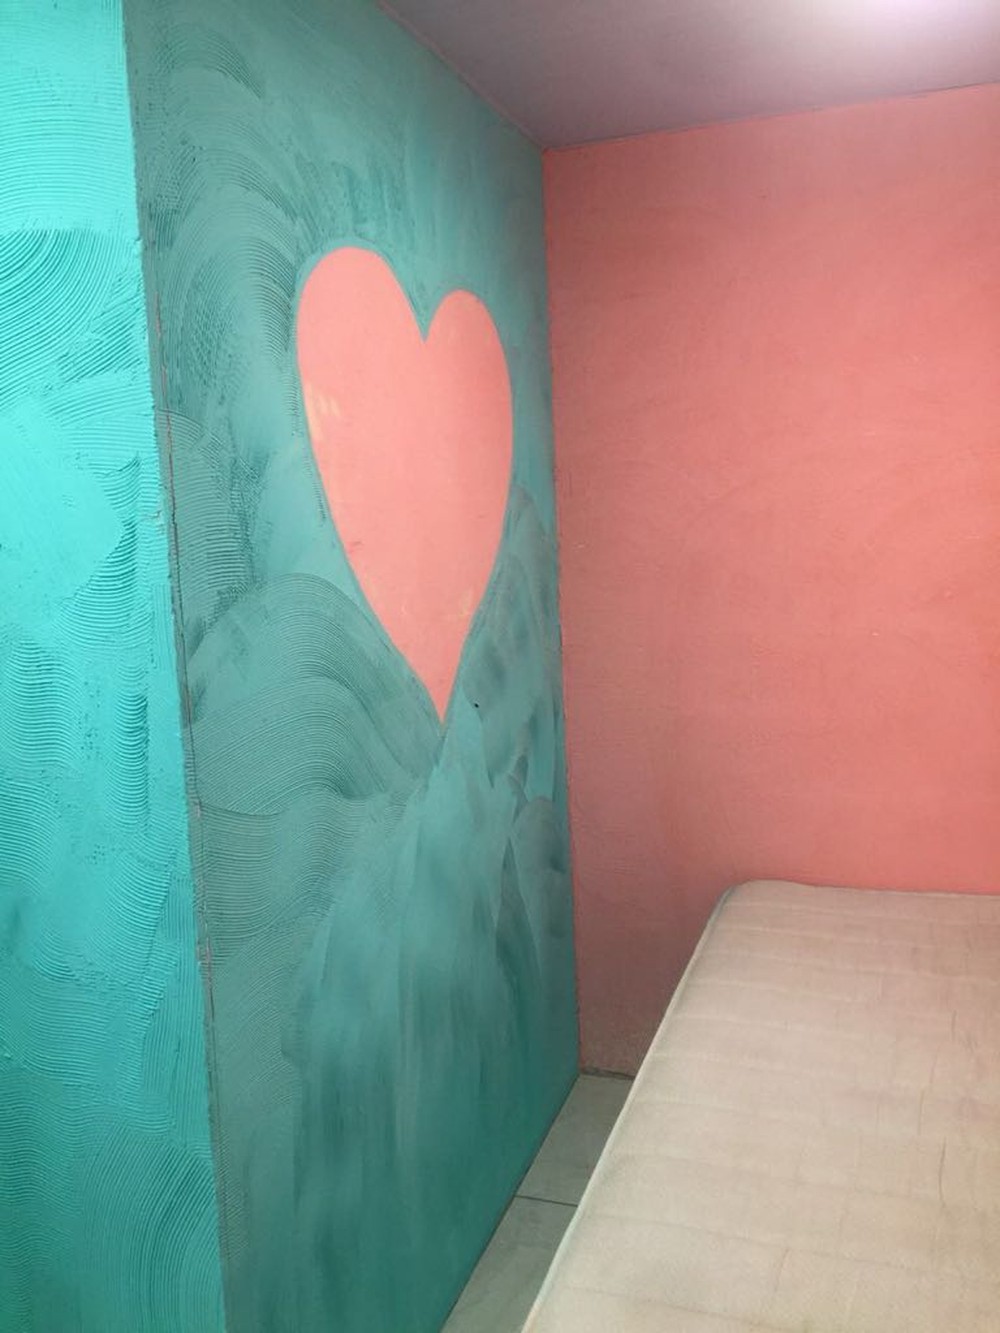 Suíte com parede pintada com coração, na Cadeia Pública de Benfica. 